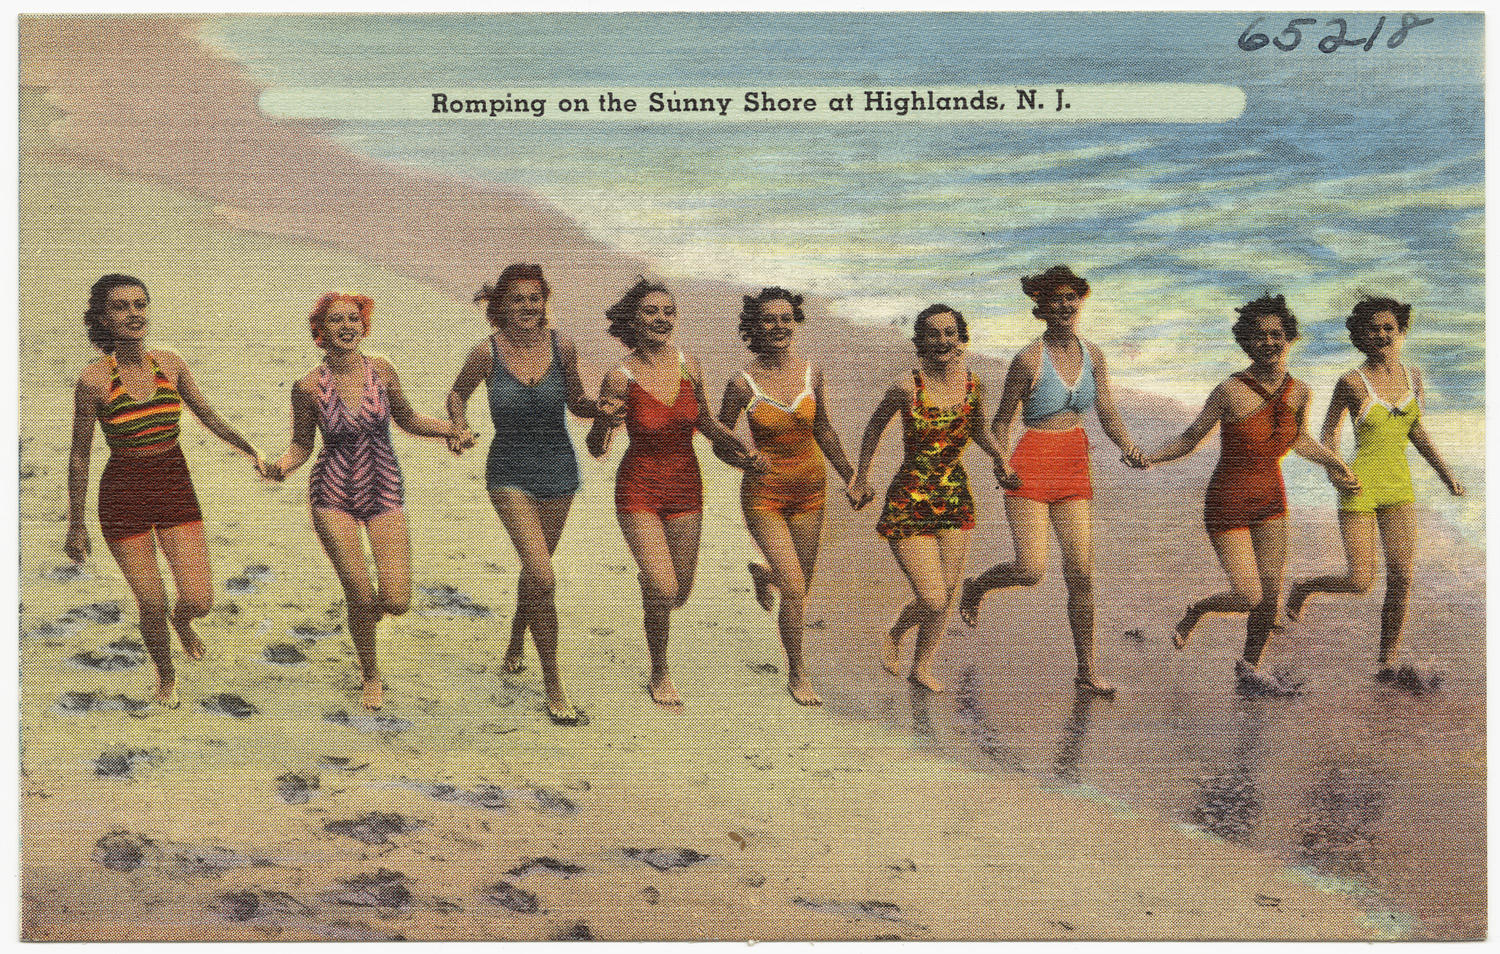 women on beach in swimsuits walking toward the water